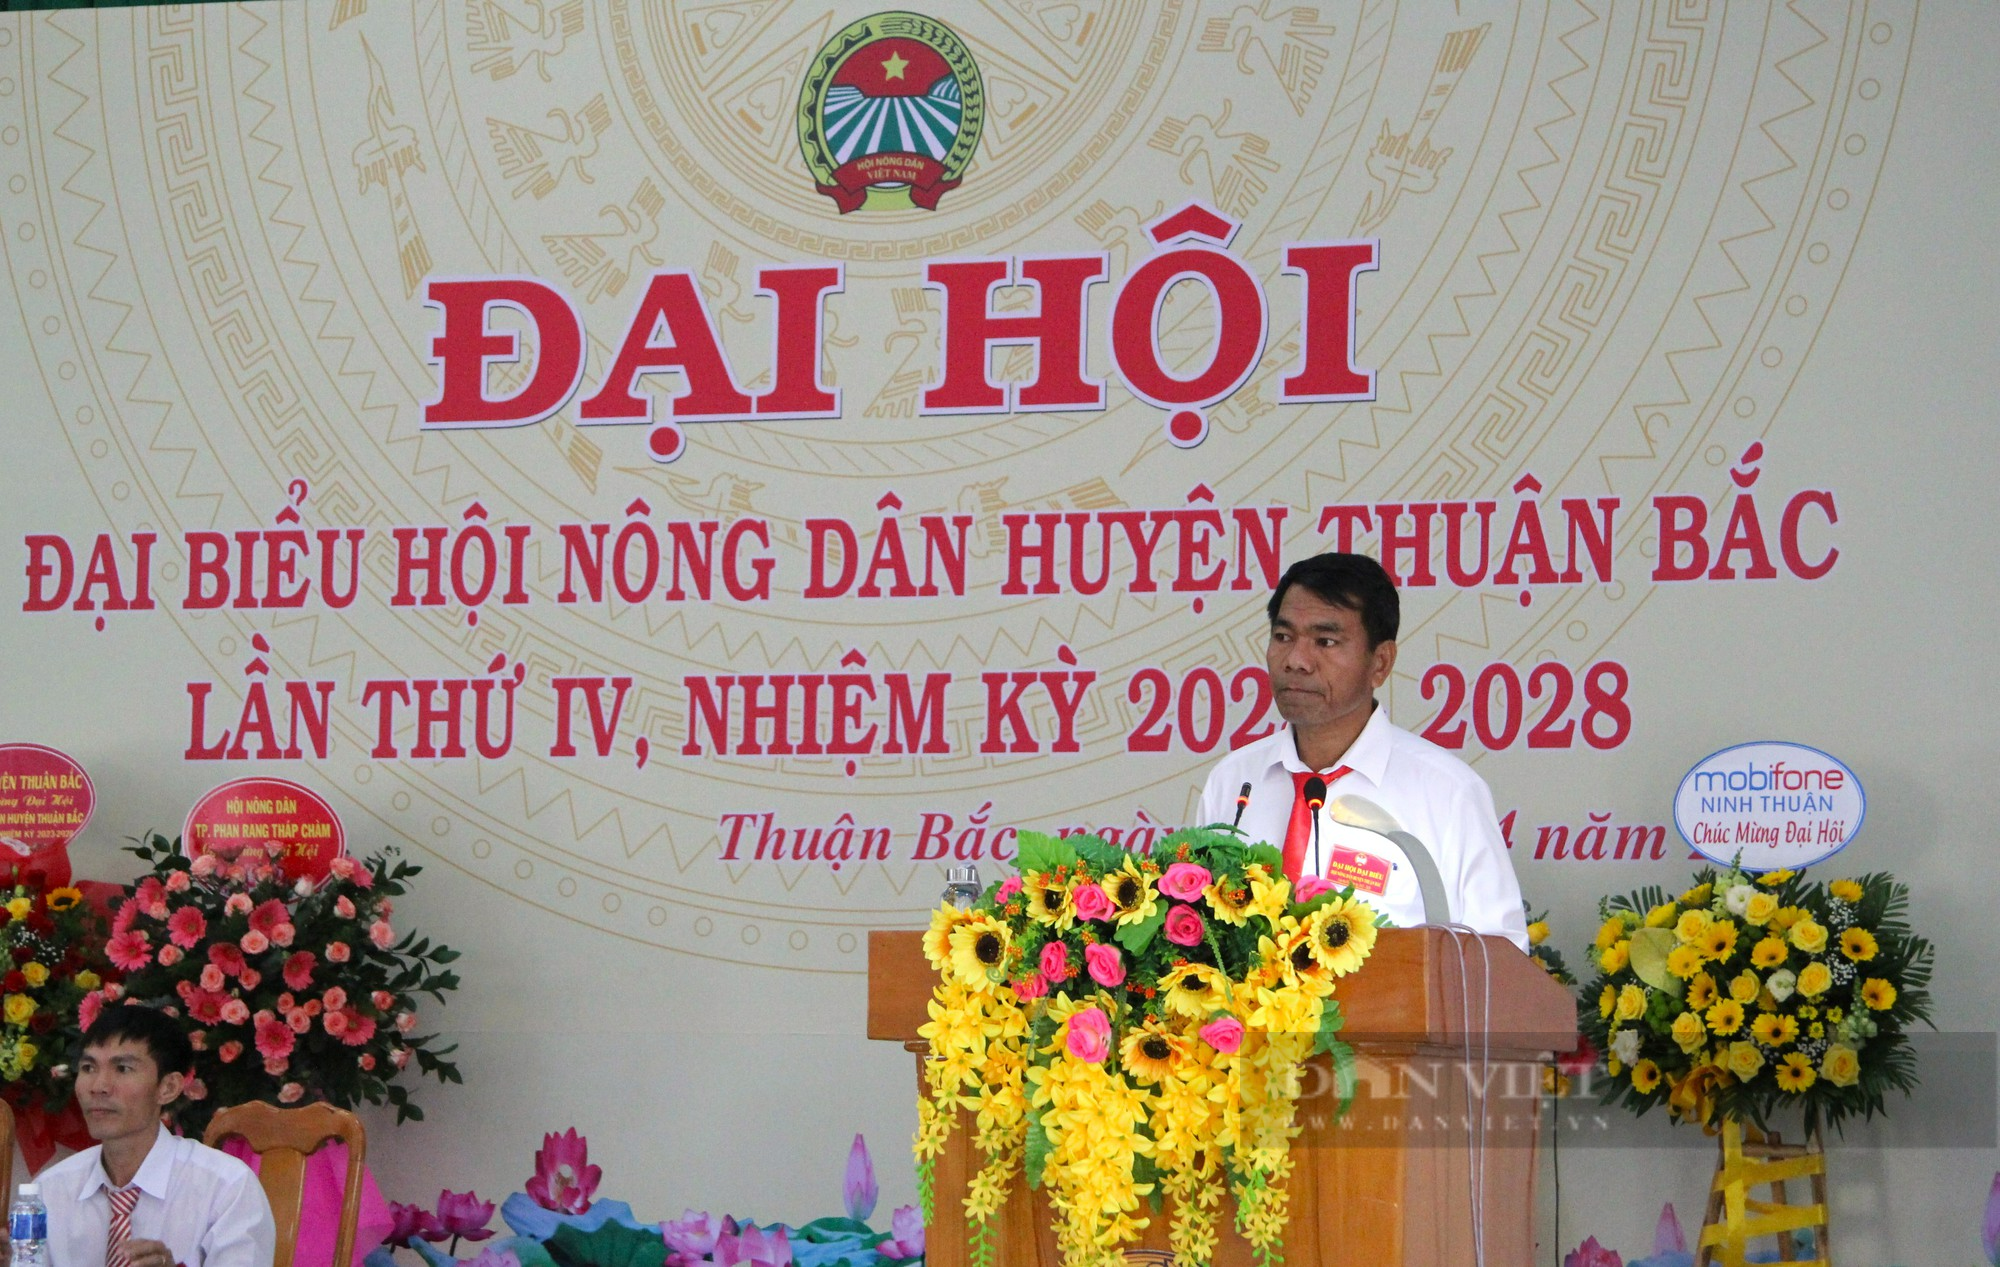 Đại Hội đại biểu Hội Nông dân huyện Thuận Bắc (Ninh Thuận), ông Nguyễn Văn Lắm tái cử chức Chủ tịch  - Ảnh 9.